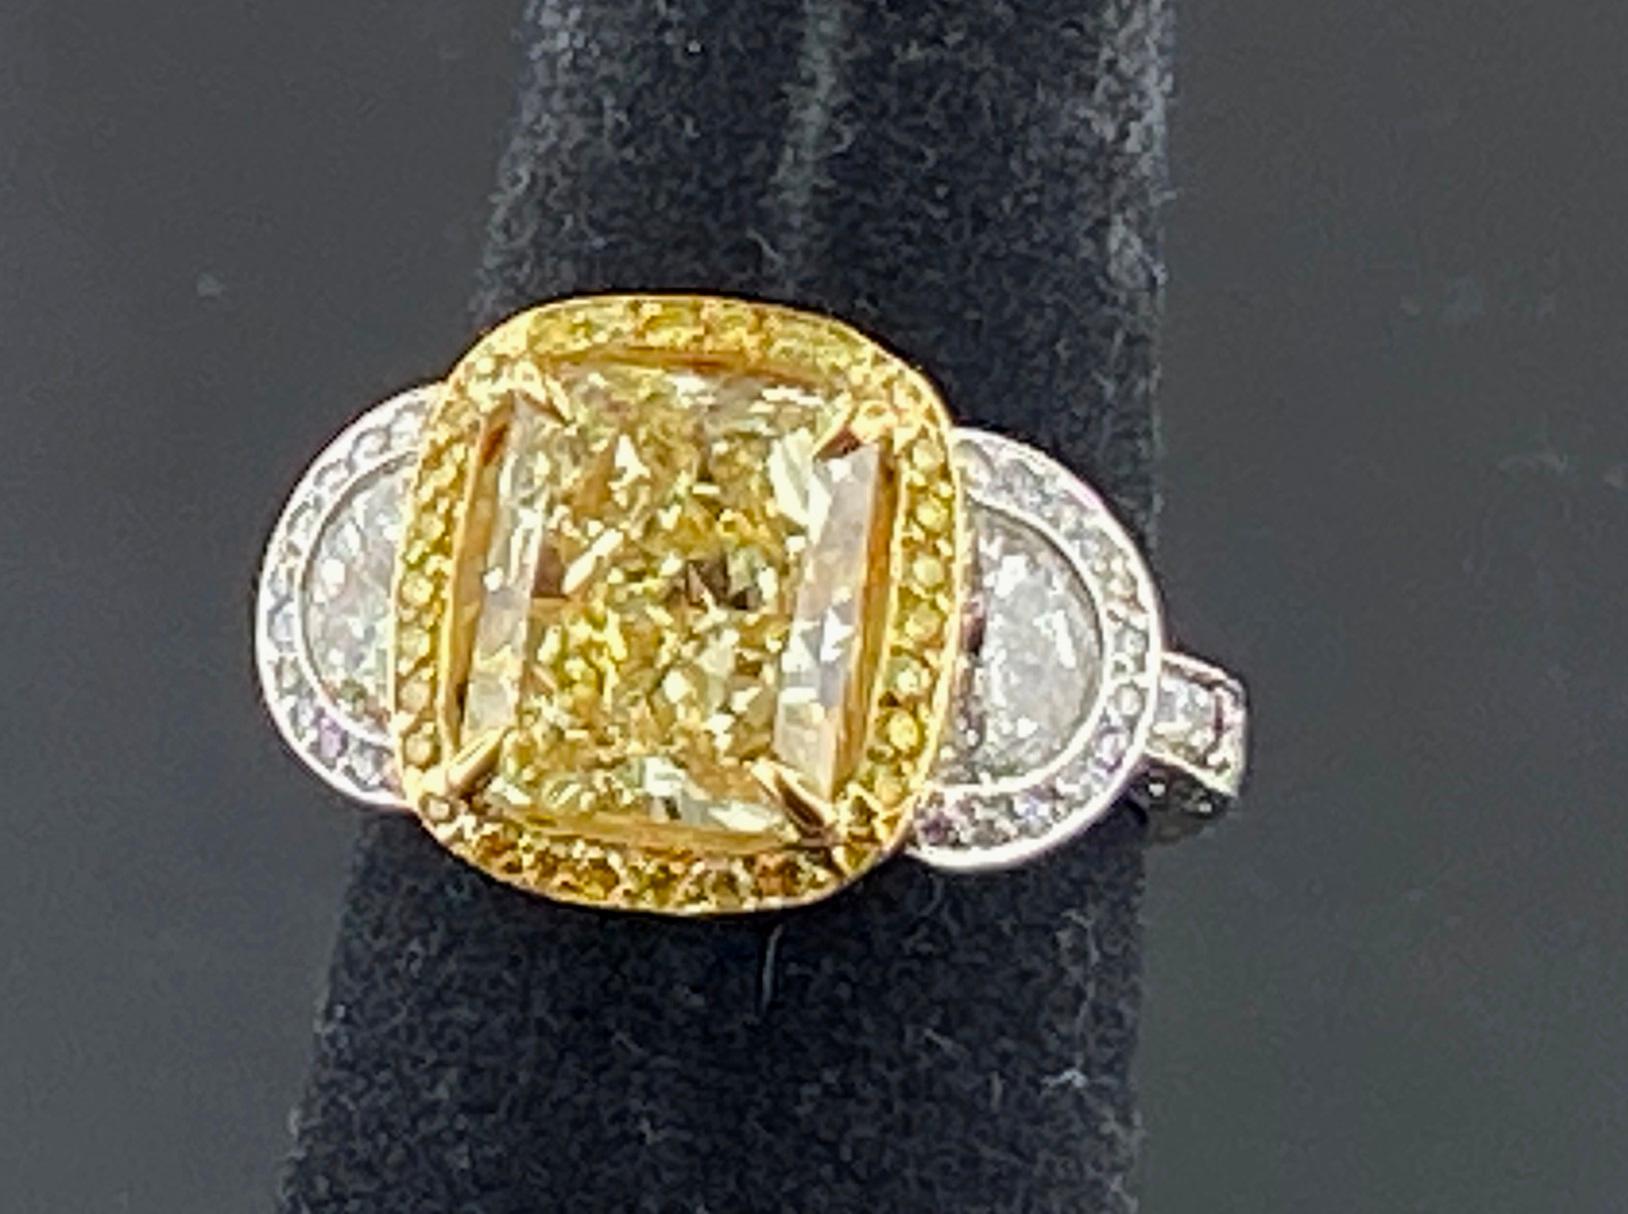 In Platin und 18 Karat Gelbgold gefasst, mit einem Gewicht von 11 Gramm, ist ein 3,74 Karat Radiant Cut Fancy Yellow Diamant, Reinheitsgrad von: VVS-2.  Um den zentralen Diamanten herum befinden sich 88 Fancy Yellow Round Brilliant Cut Diamanten mit